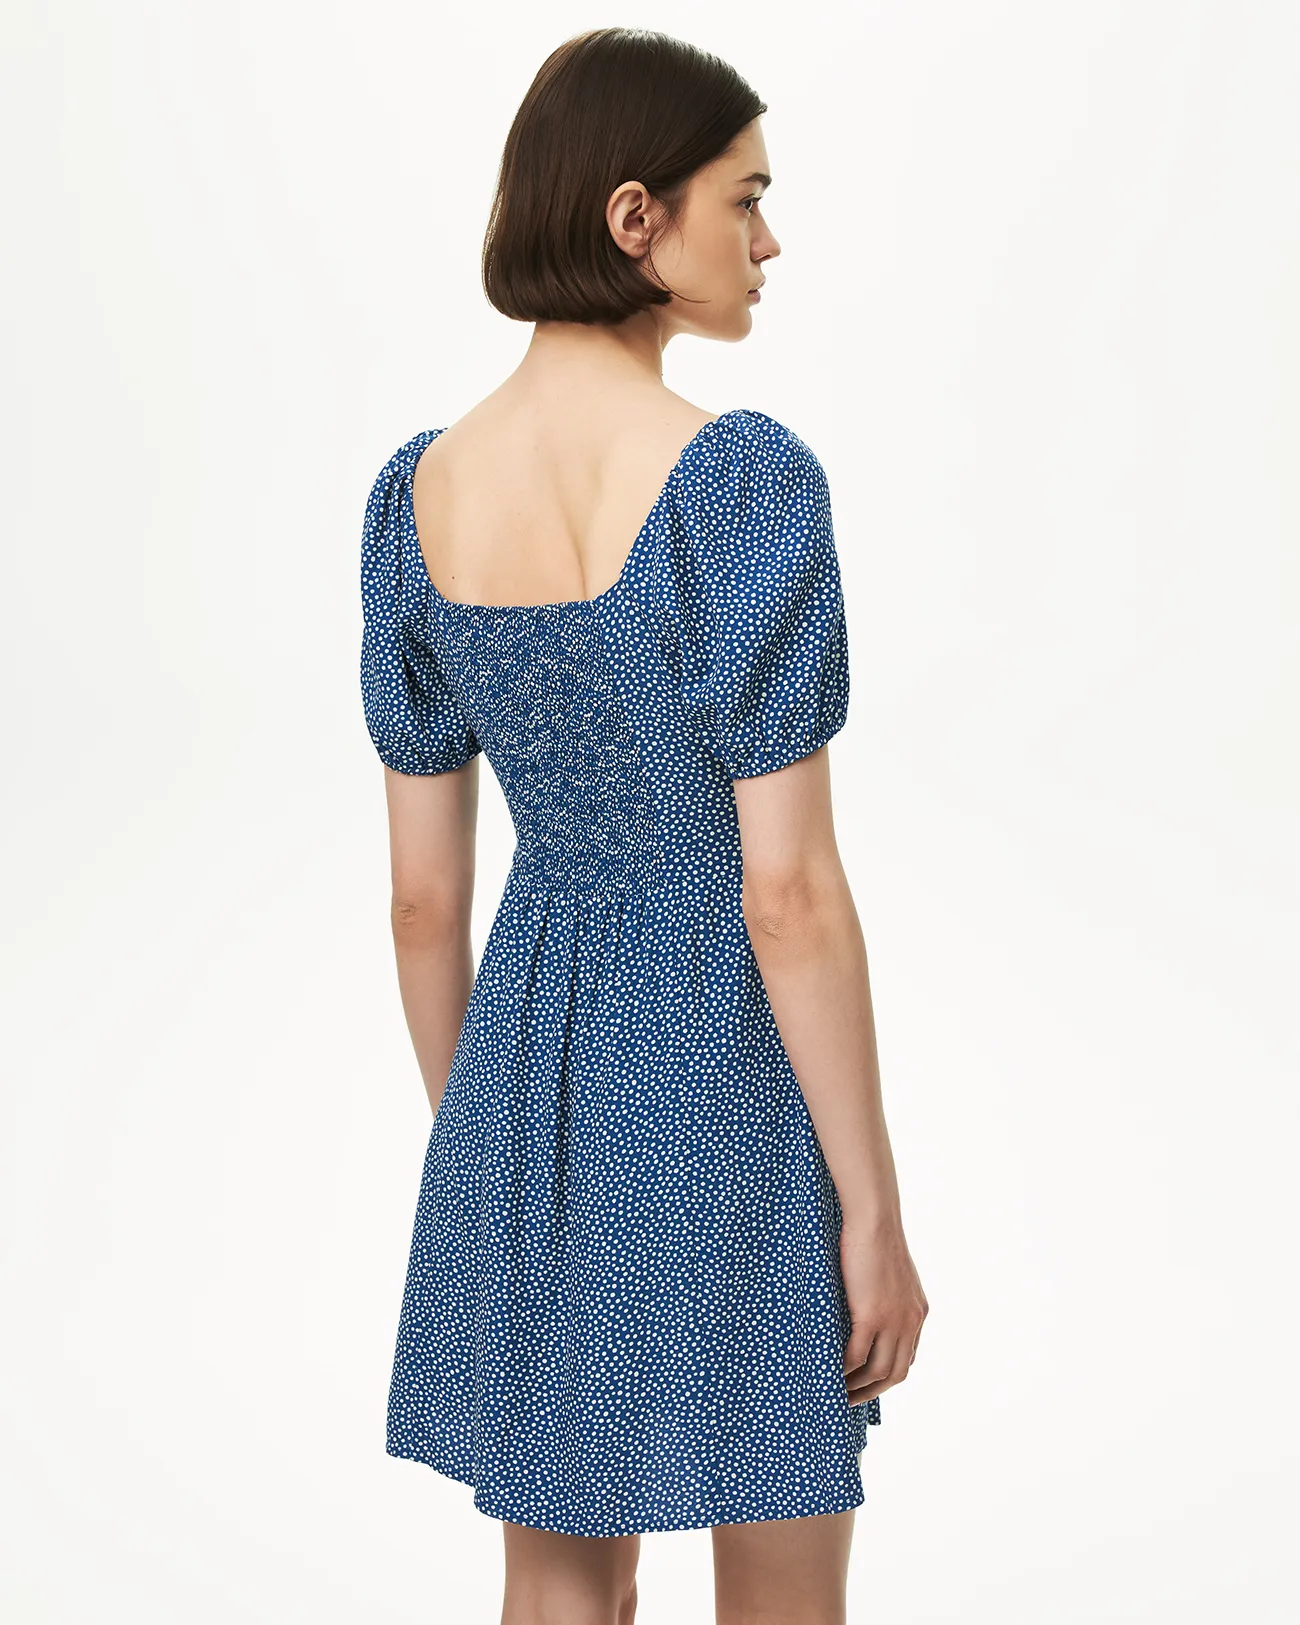 Платье мини синего цвета